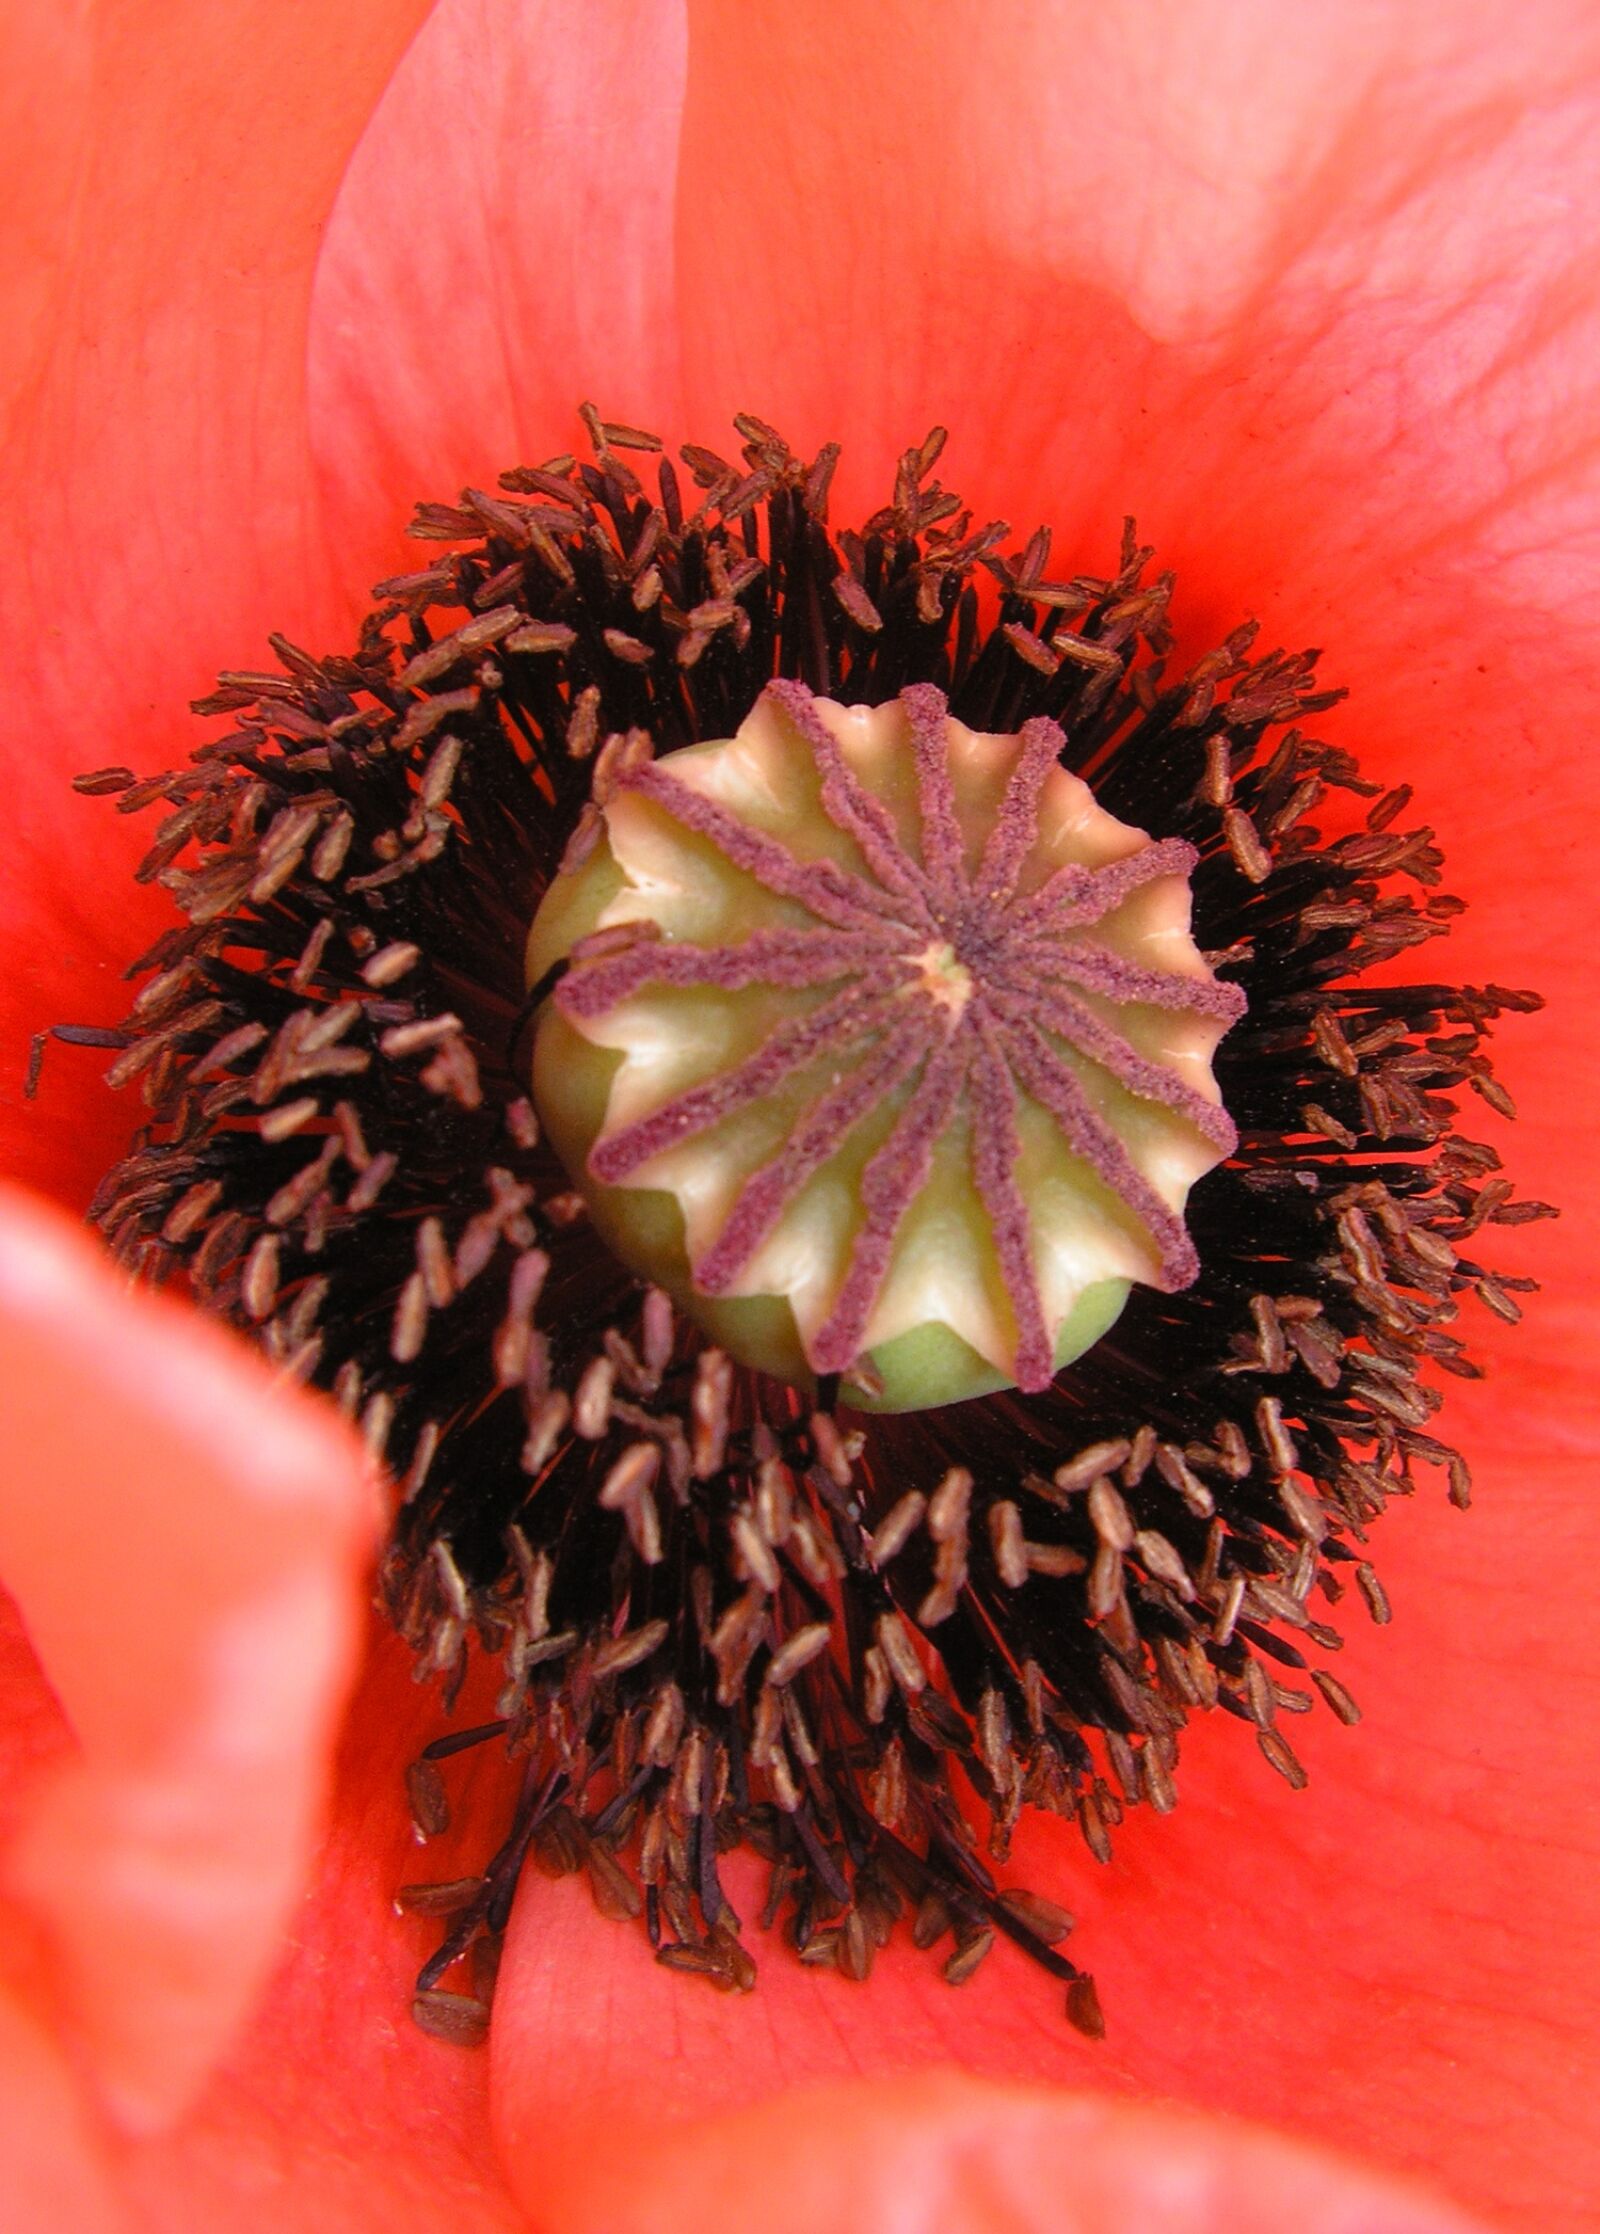 Olympus IR-300 sample photo. Poppy, flower, red poppy photography